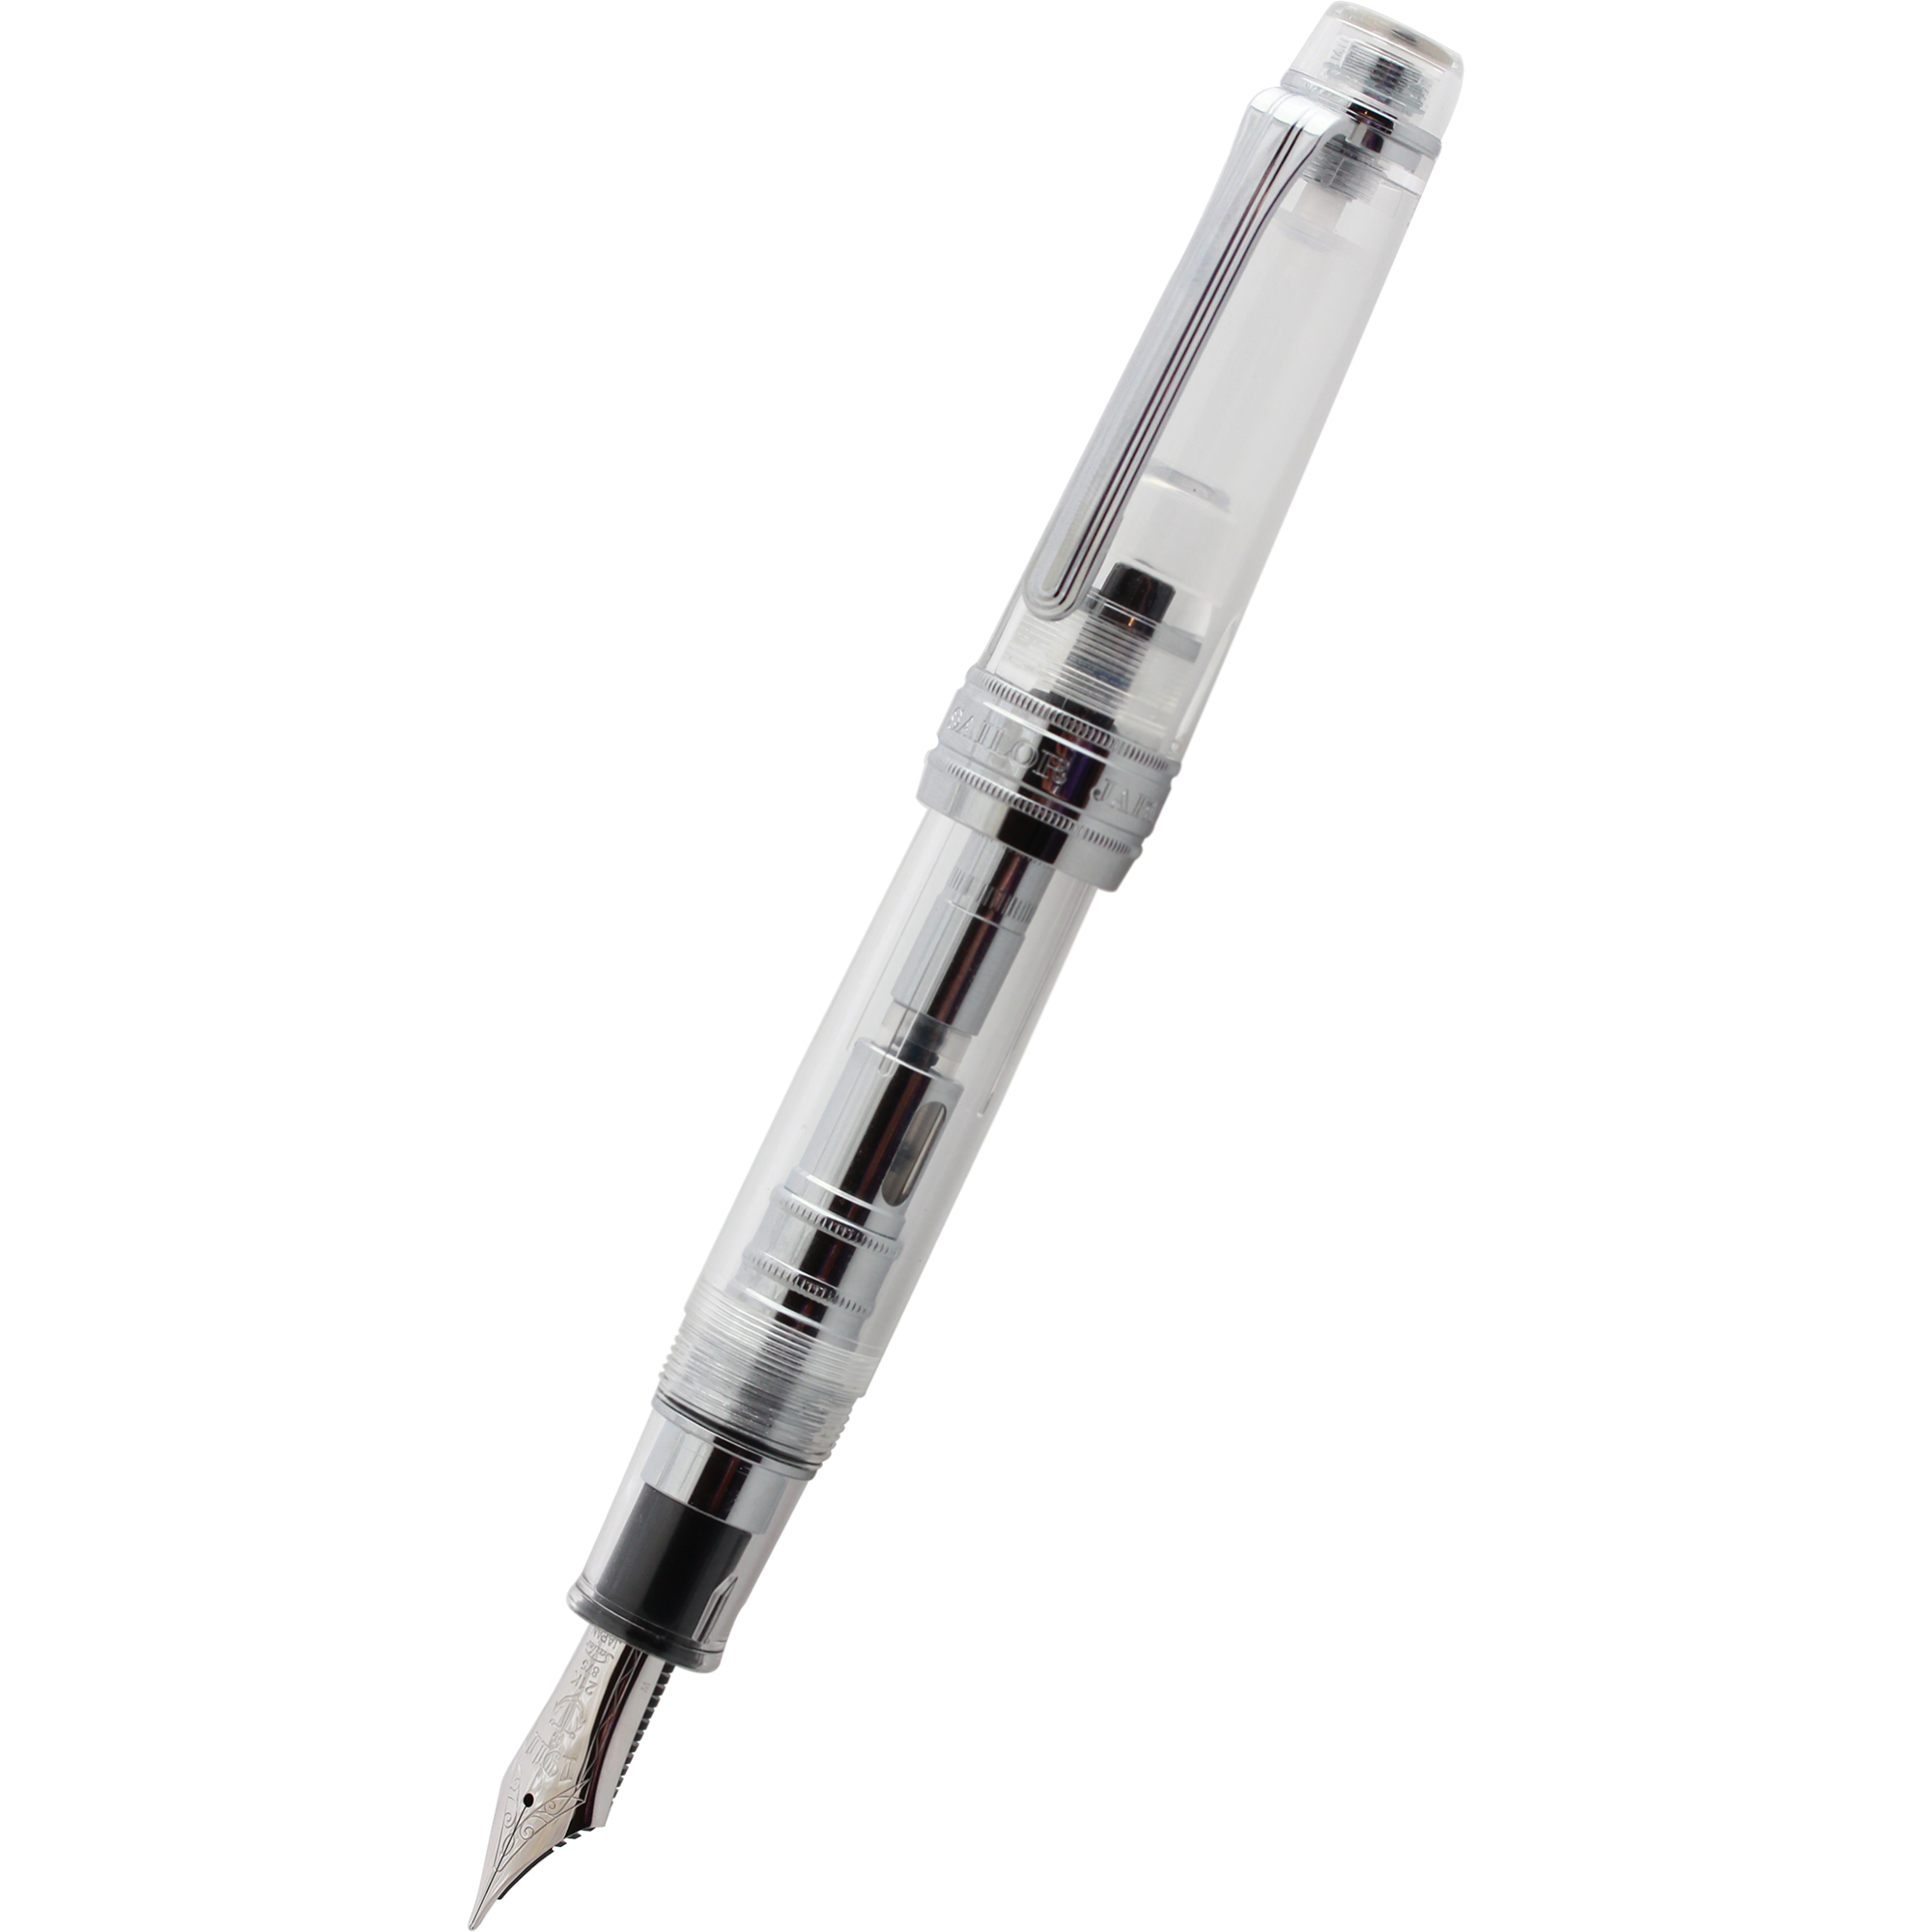 Sailor Professional Gear King of Pens Transparent/Silver Fountain Pen-Pen Boutique Ltd